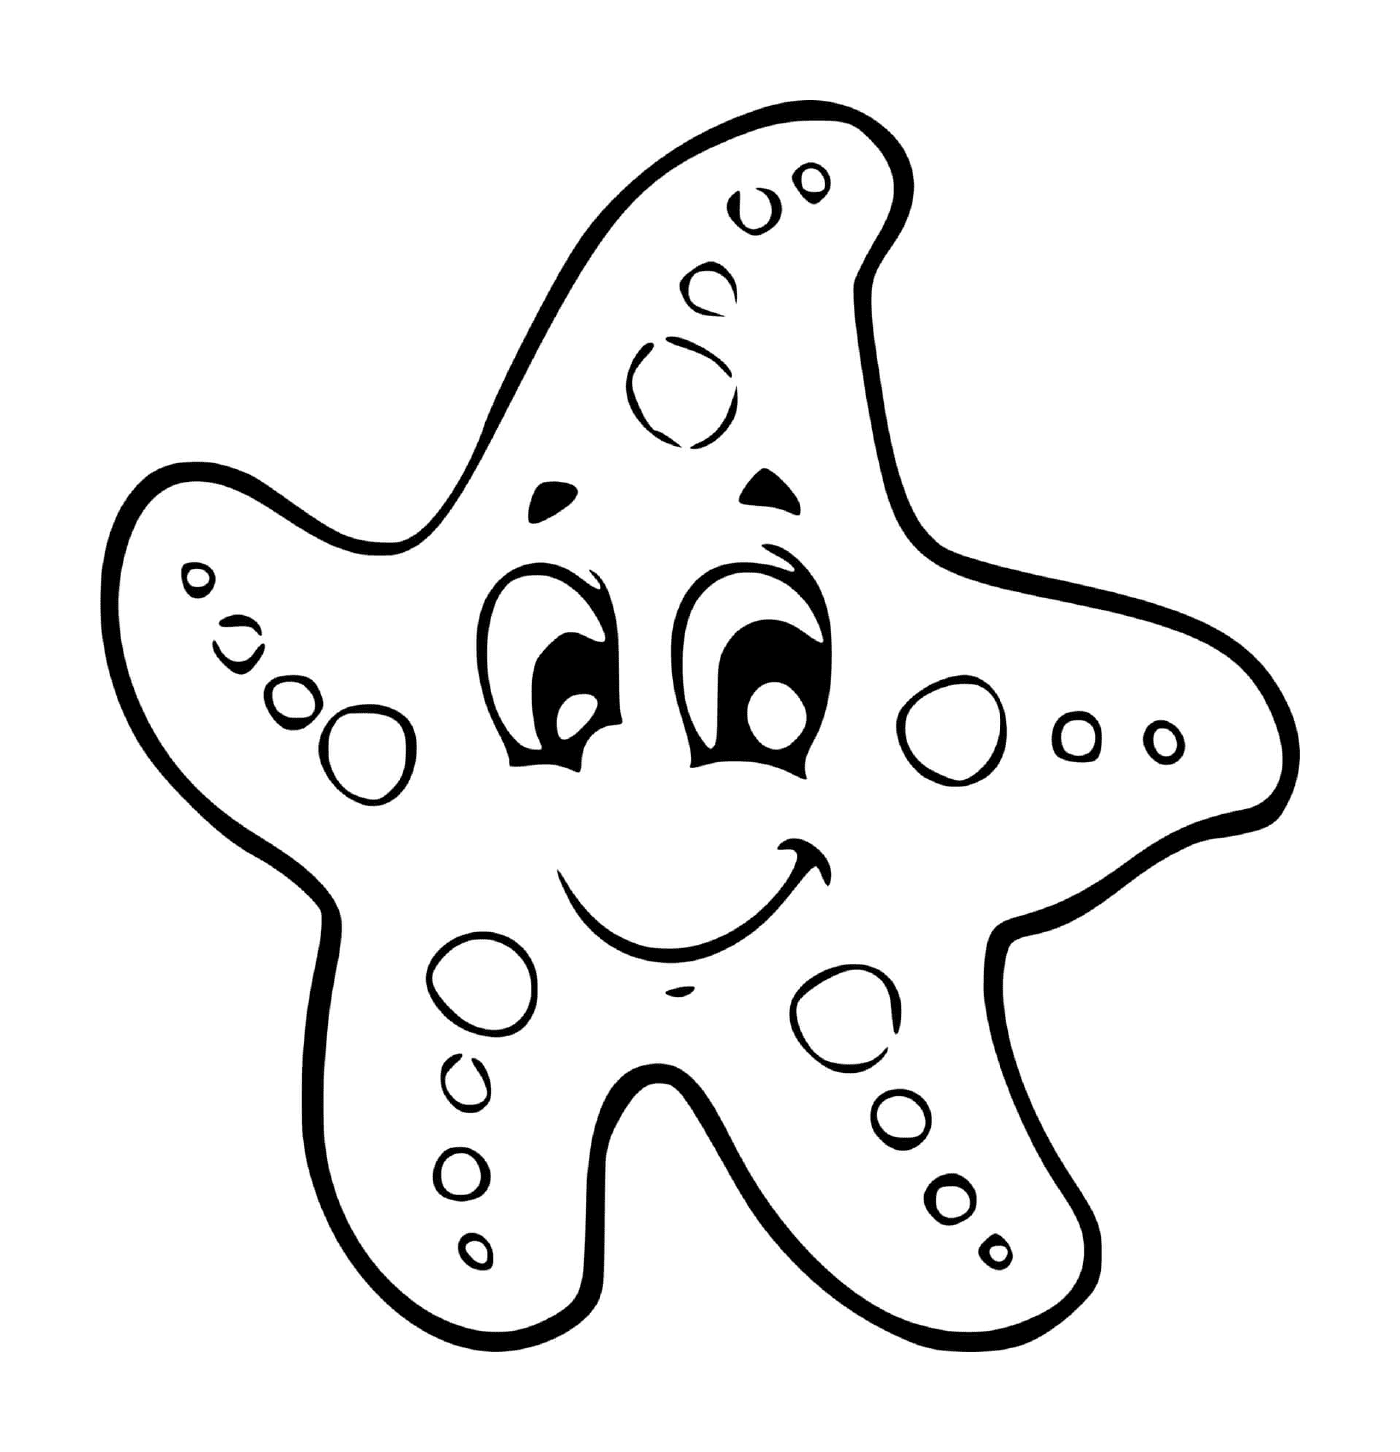  Una stella del mare per bambini in grande sezione materna 